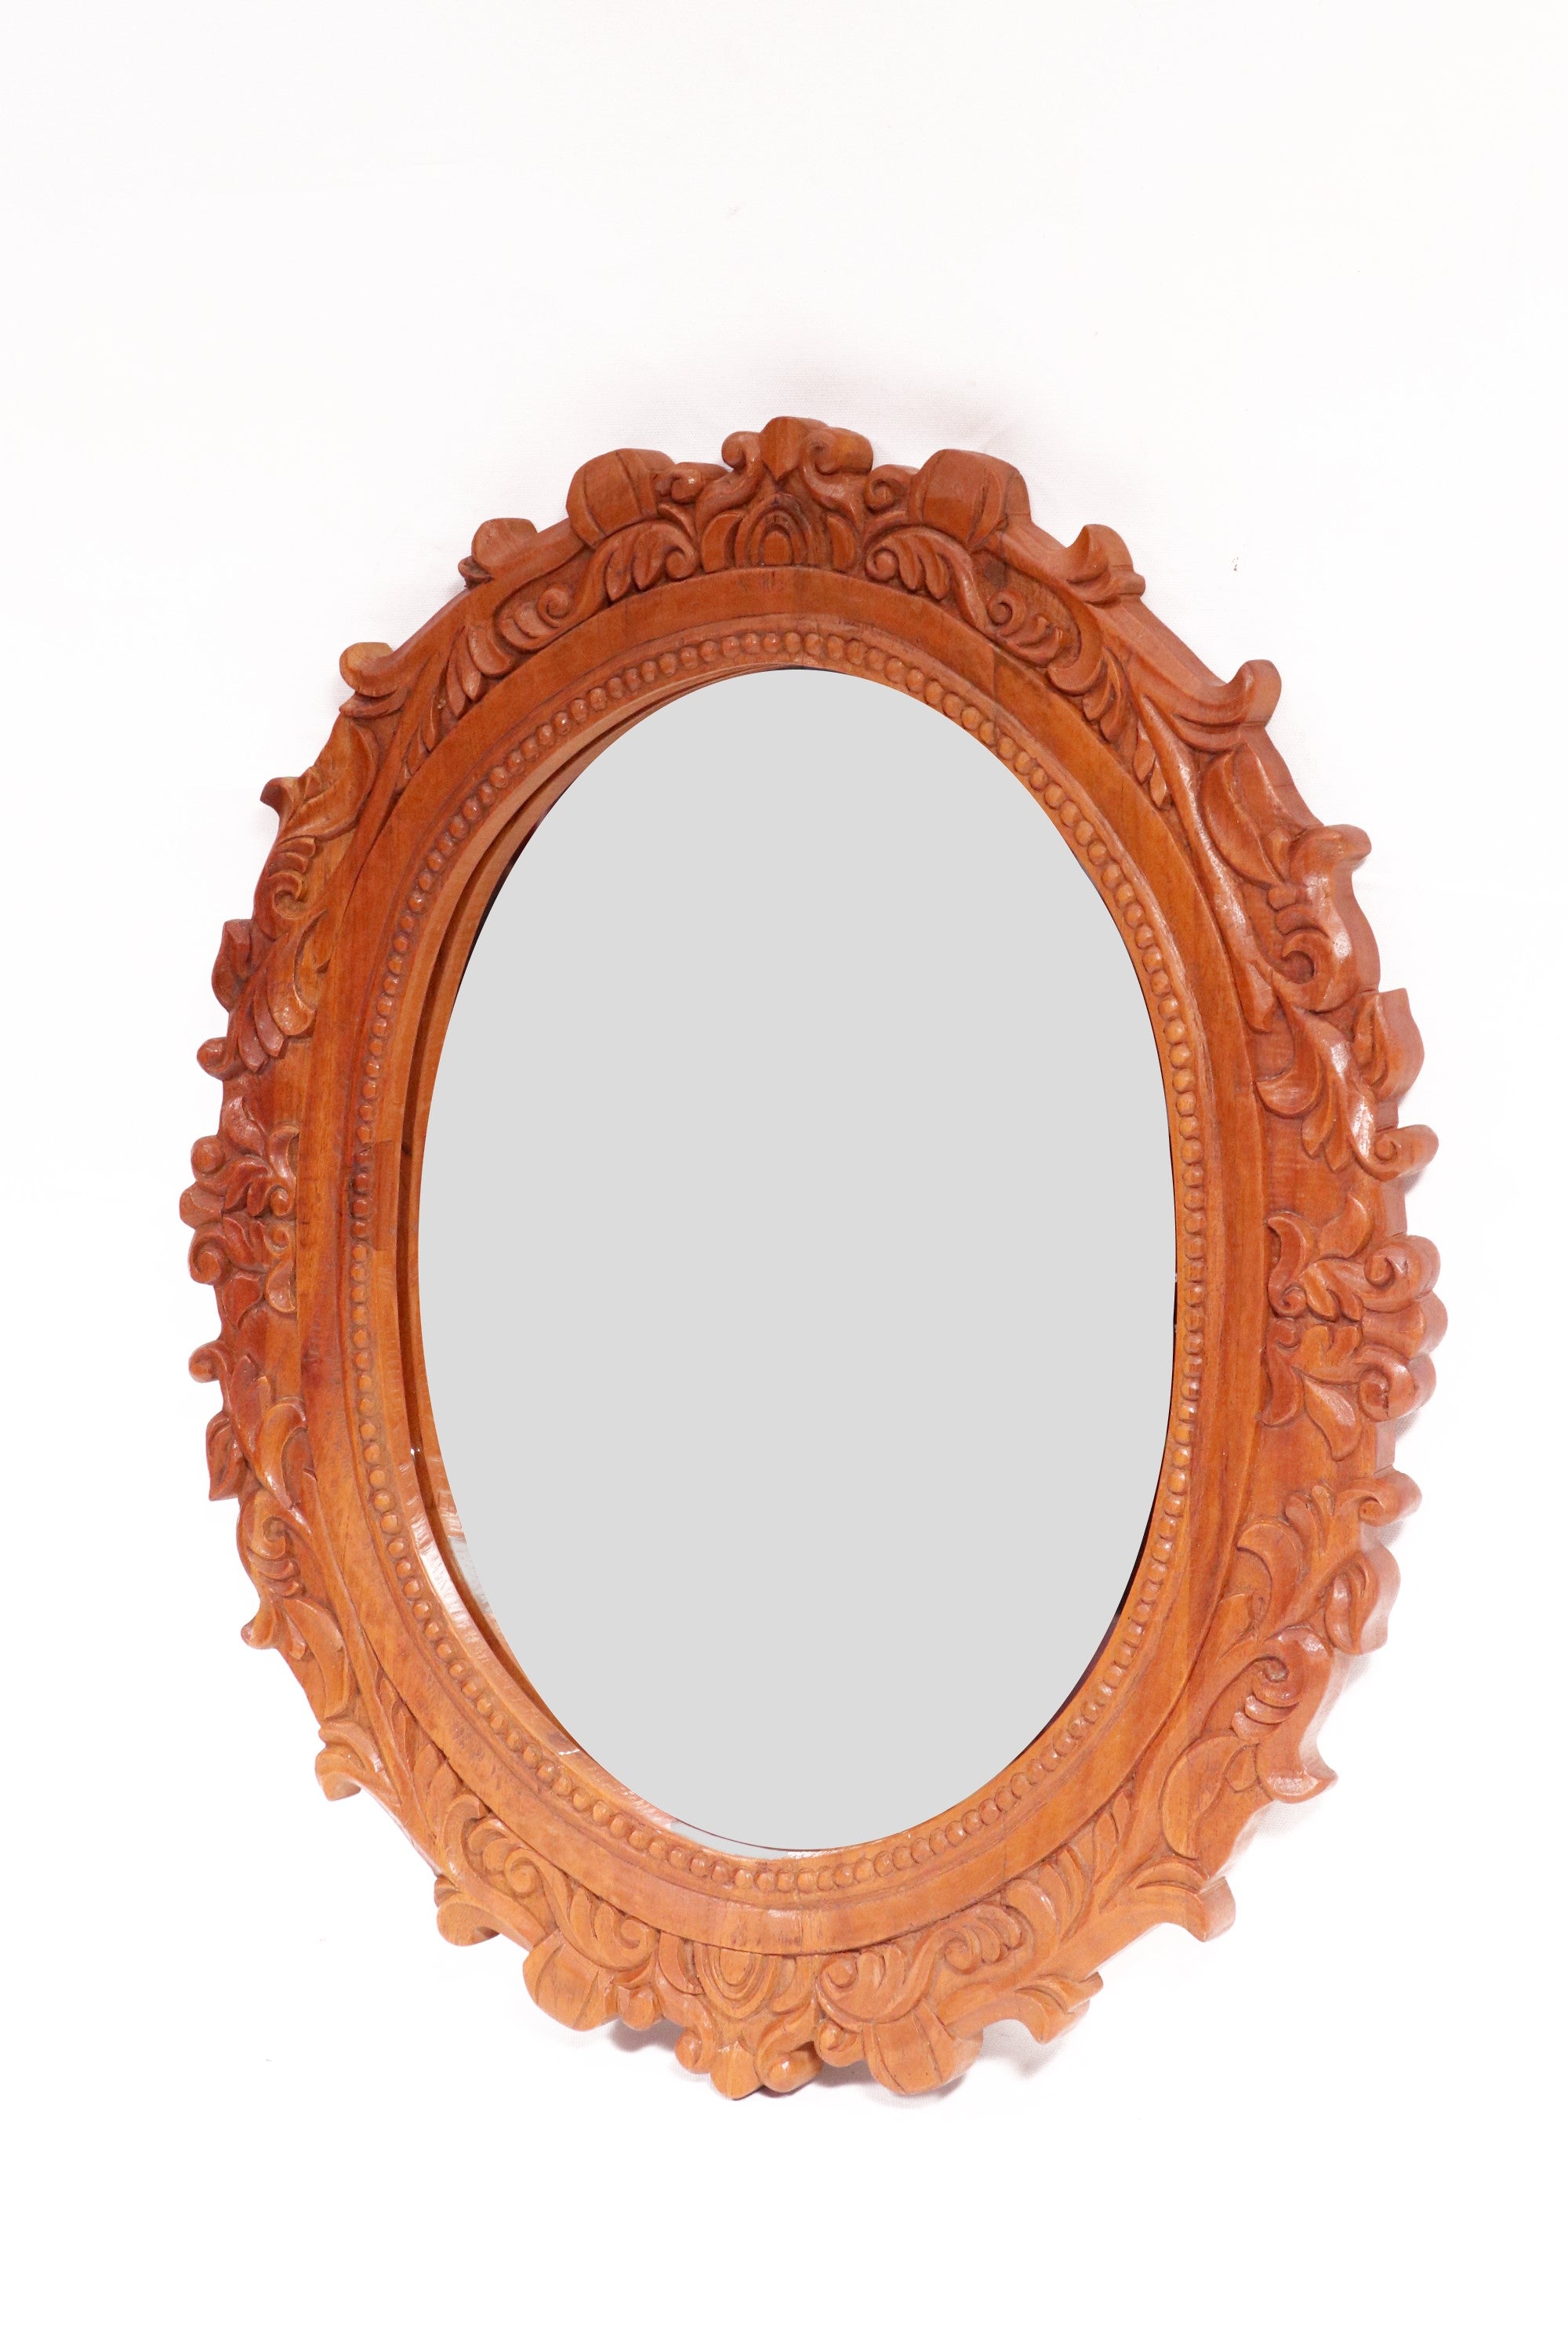 Wooden Sun flames carved round mirror Mirror